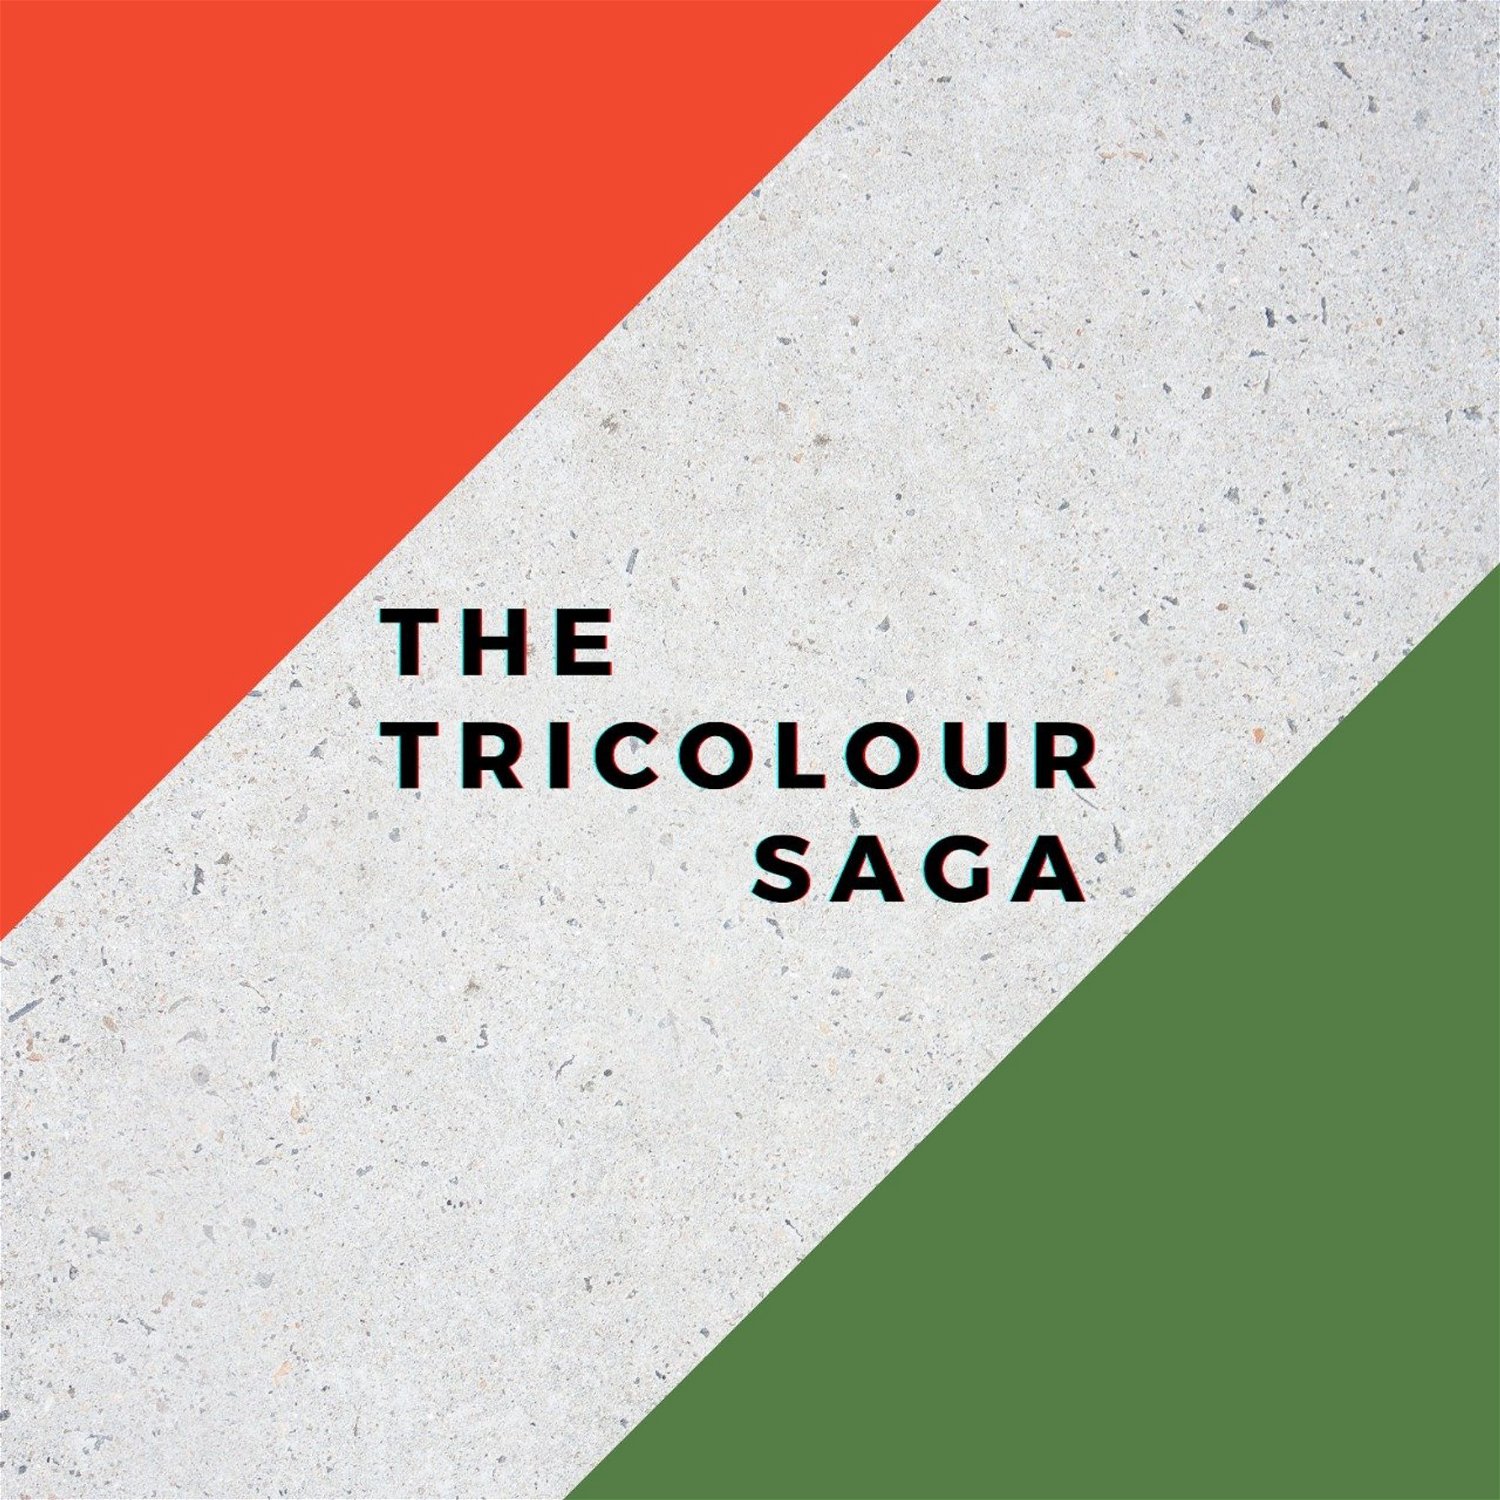 The Tricolour Saga